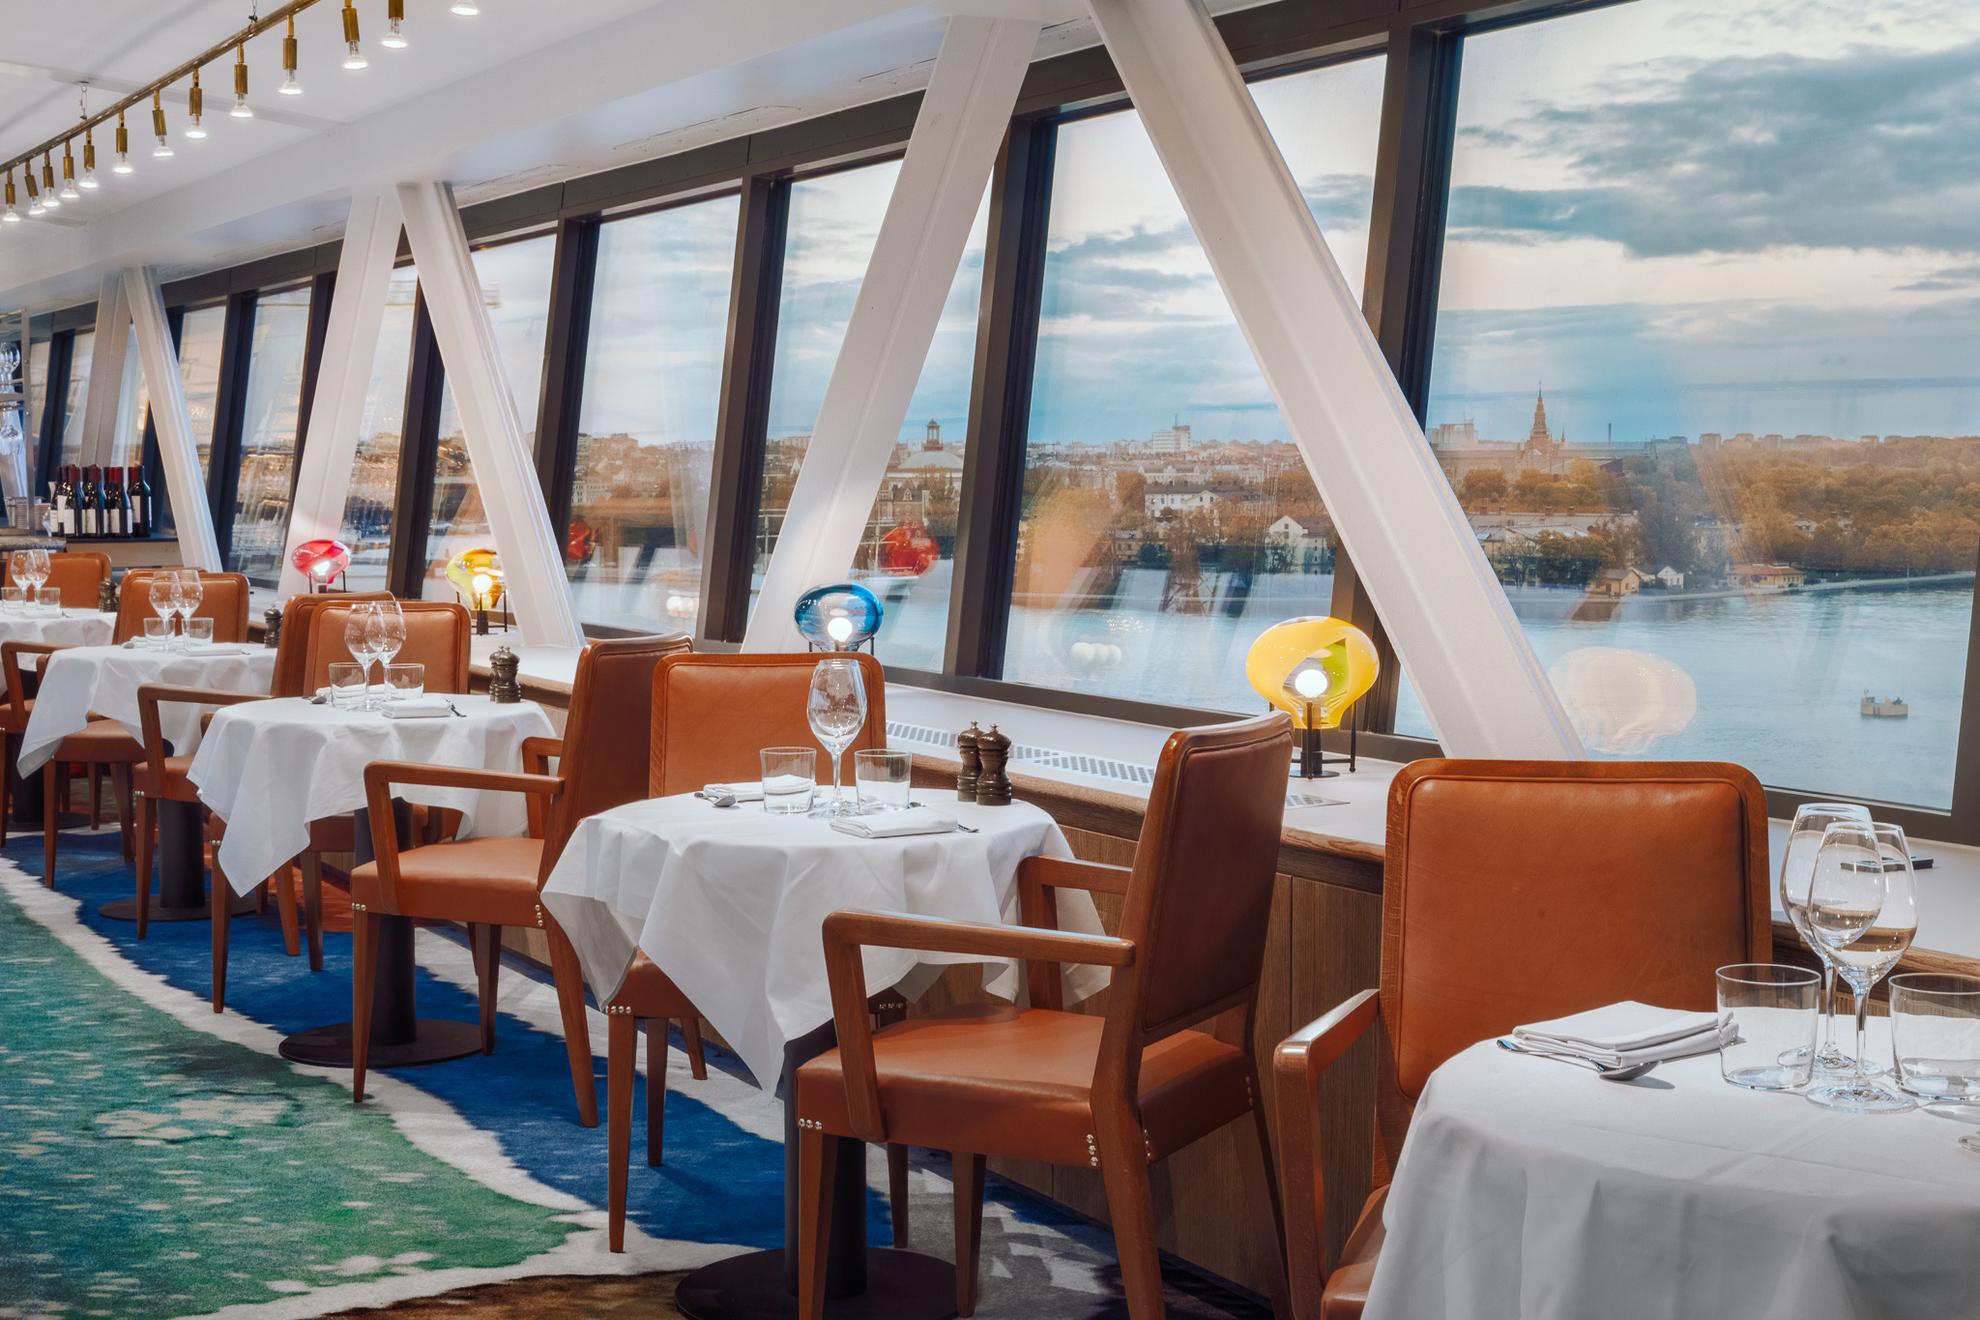 Tafels en stoelen bij restaurant Gondolen met grote ramen met uitzicht op het water.